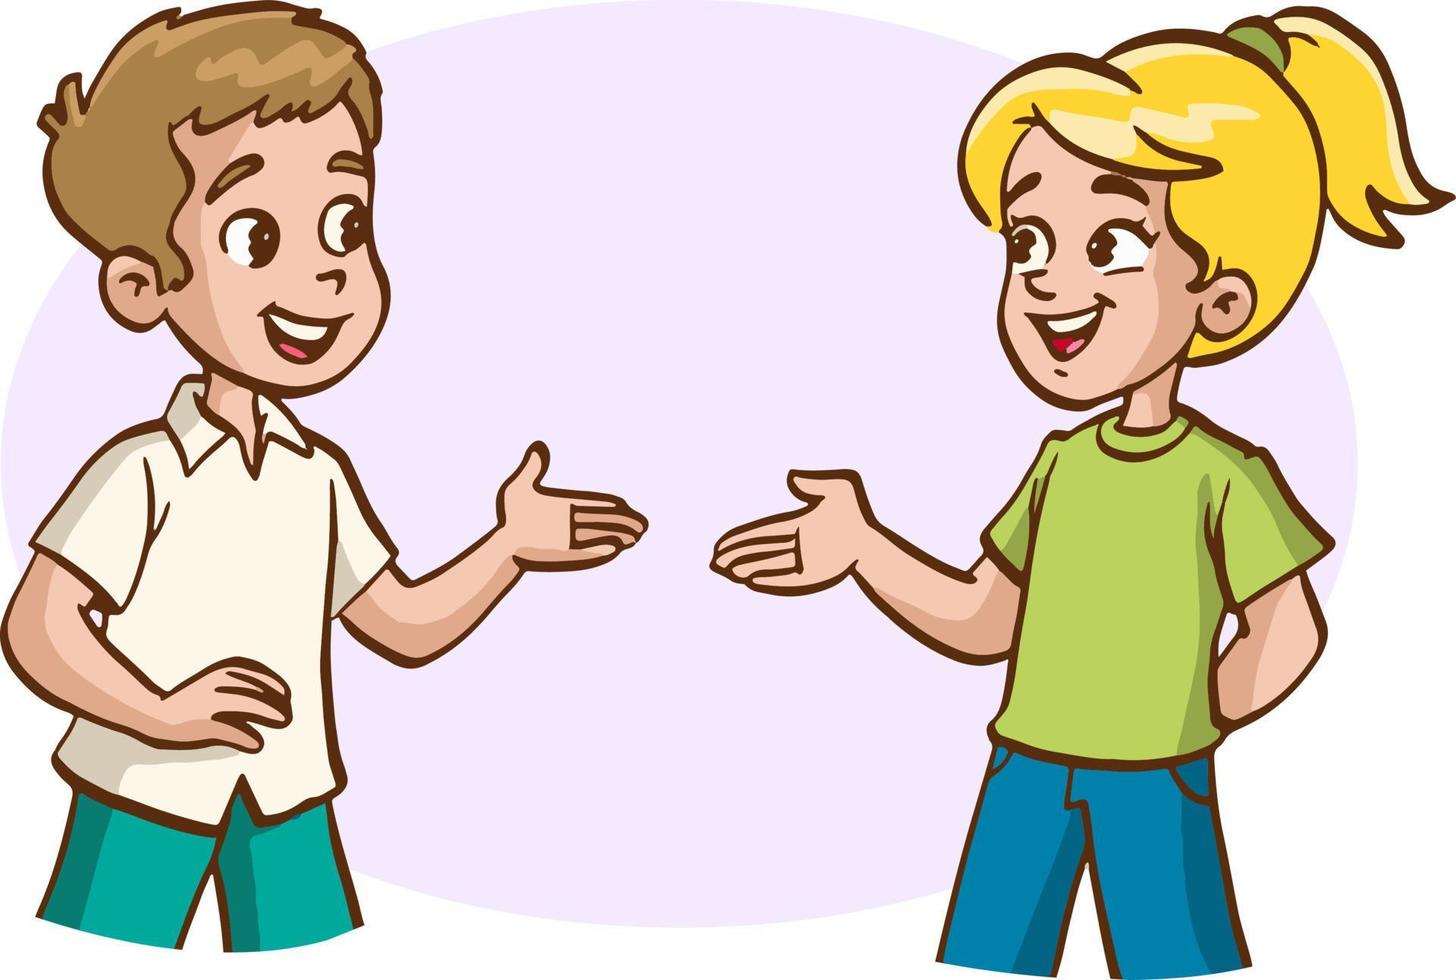 Vektor-Illustration von zwei Kindern im Gespräch vektor